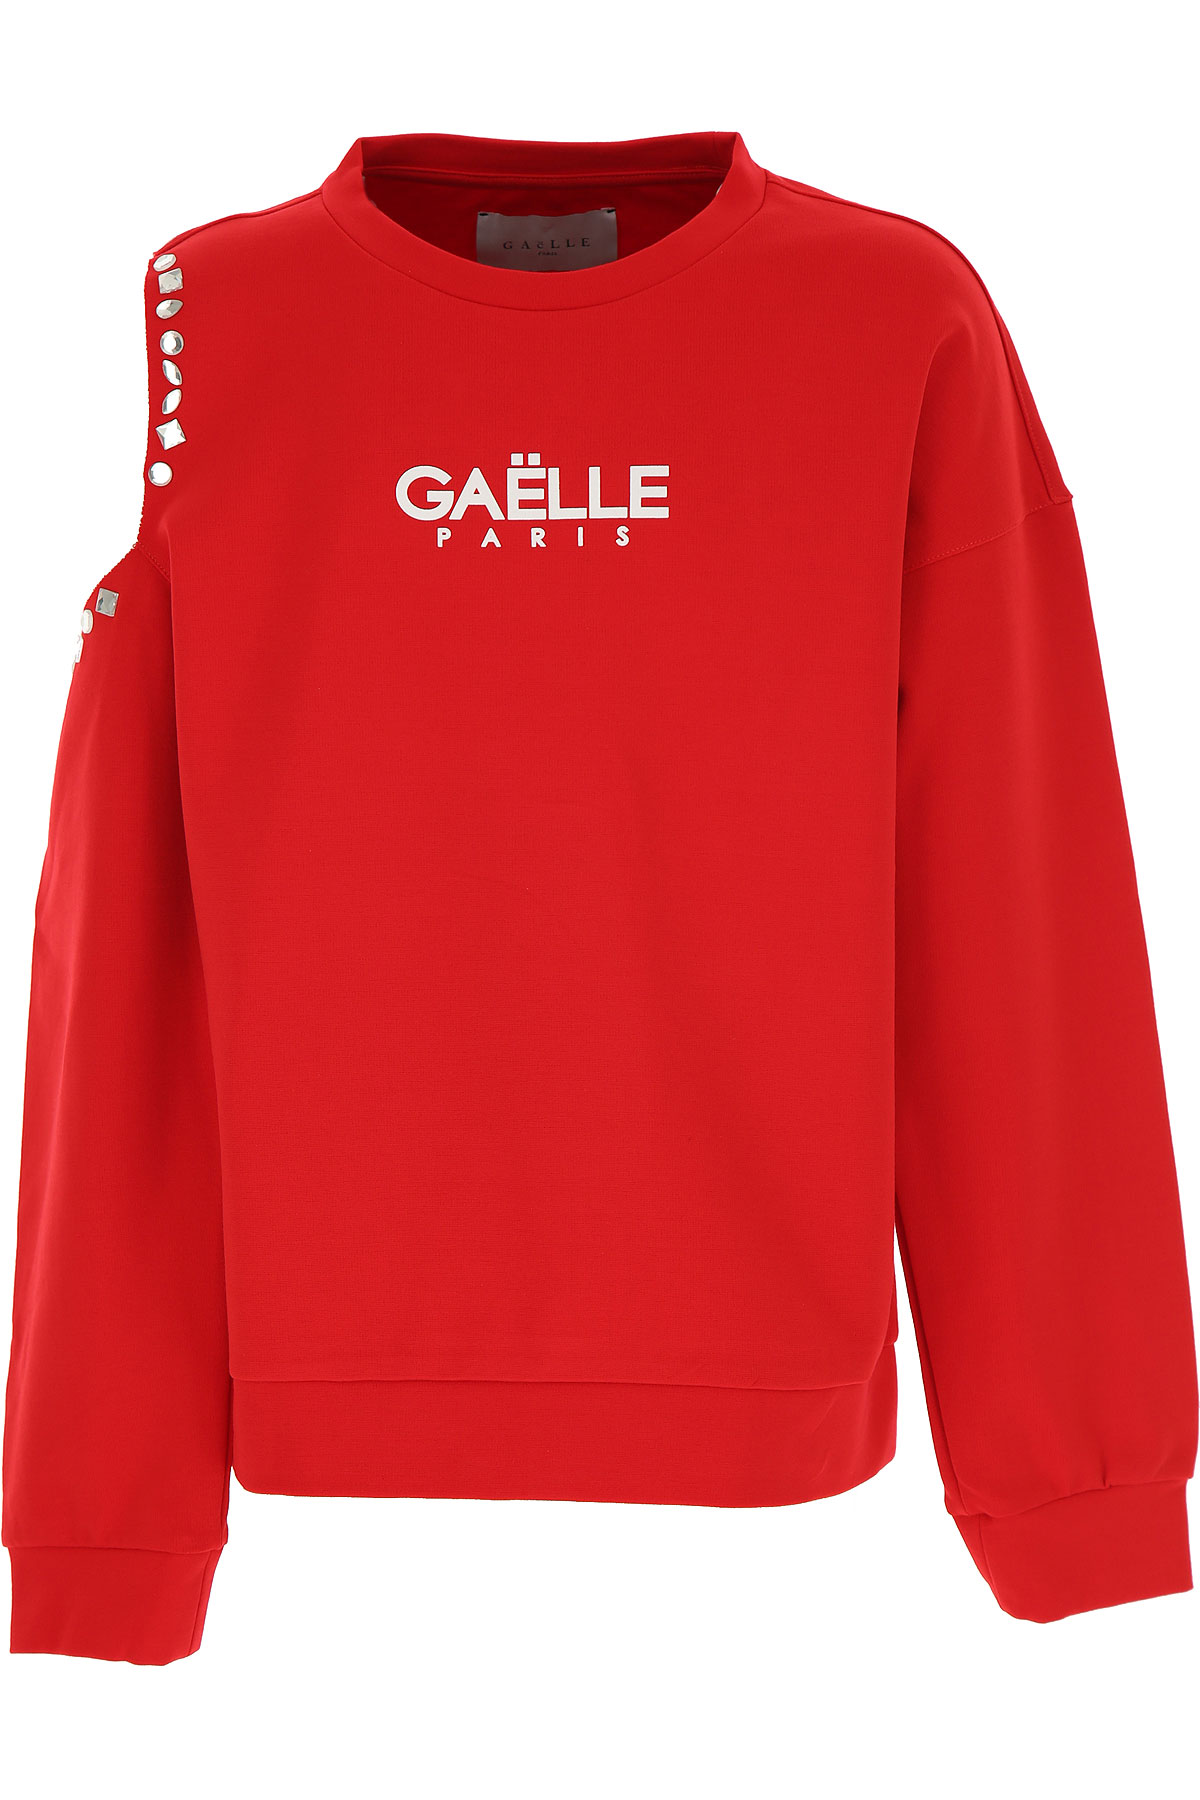 Gaelle Kinder Sweatshirt & Kapuzenpullover für Mädchen Günstig im Sale, Rot, Viskose, 2017, 10Y 12Y 14Y